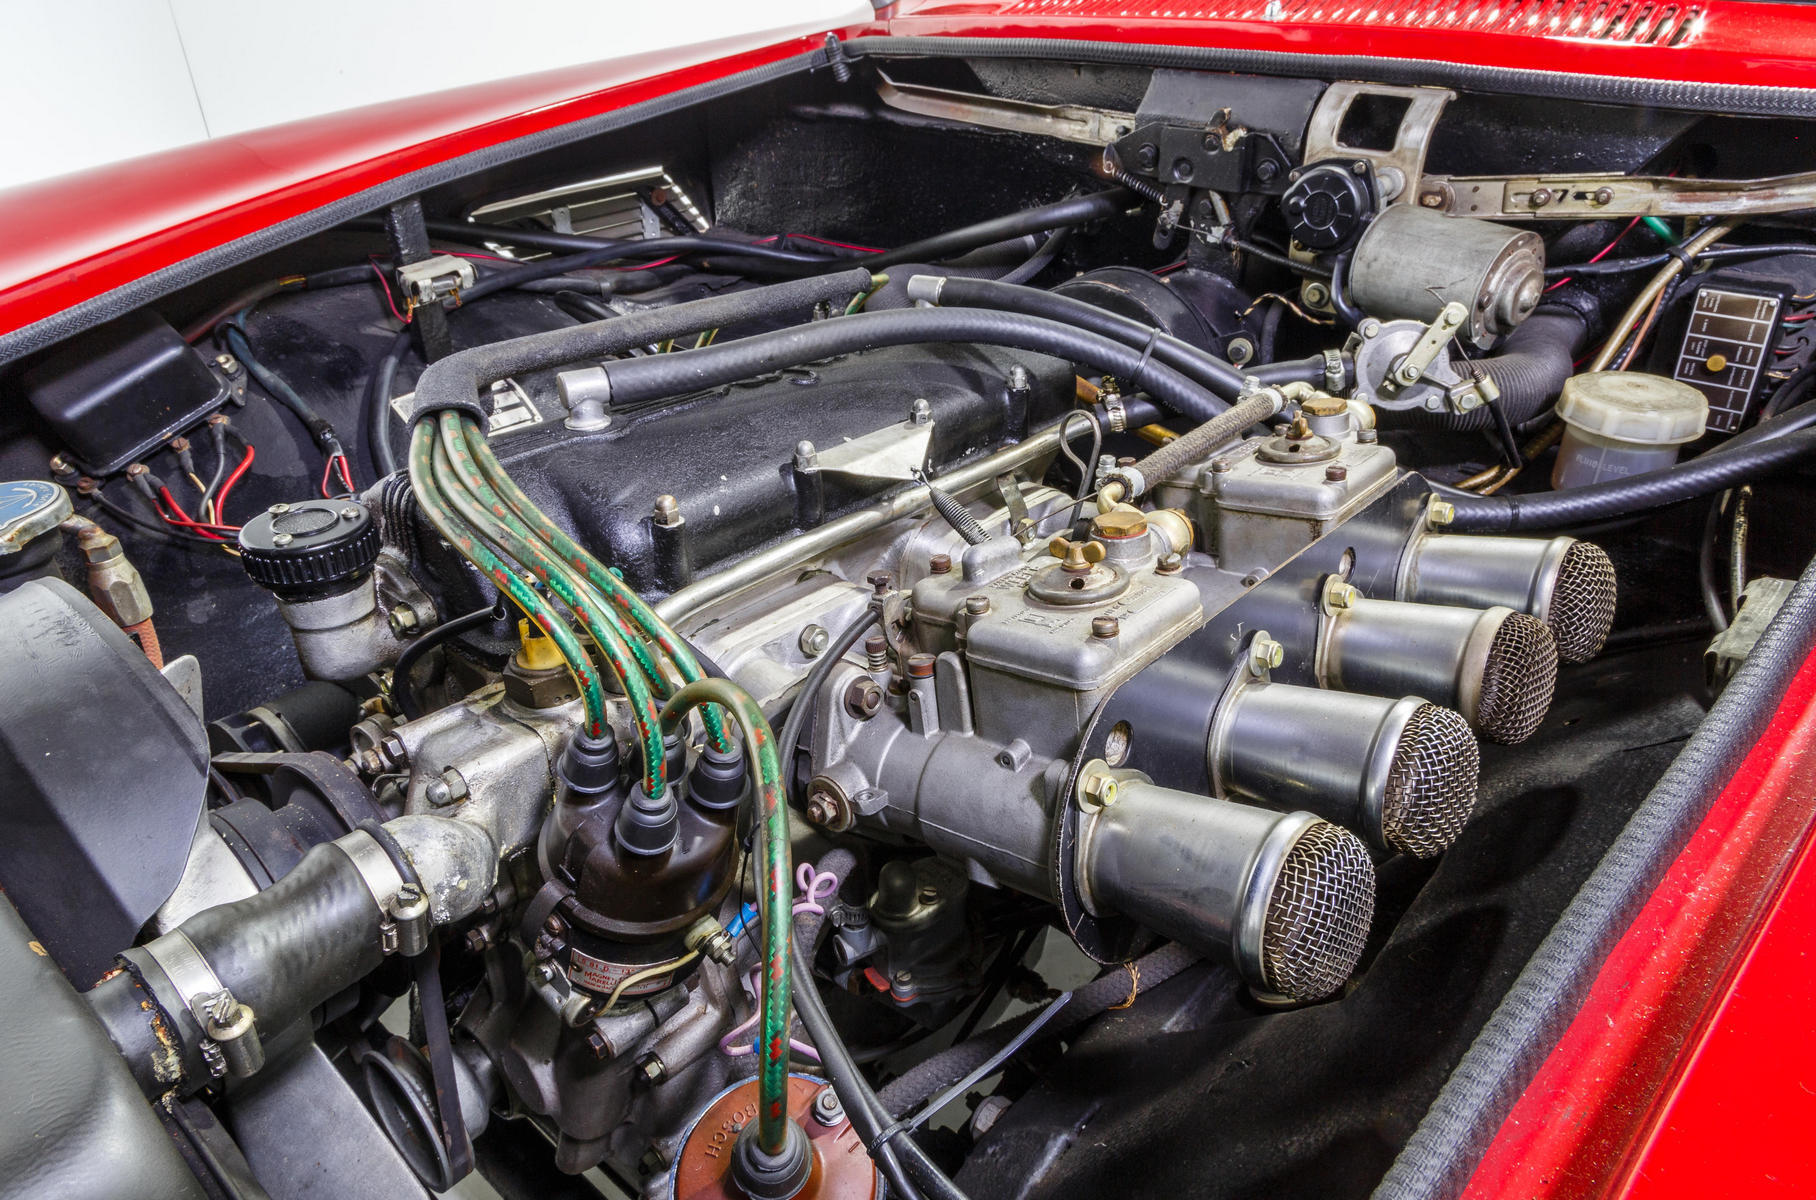 Четырёхцилиндровый мотор Tipo 141 представлля собой кусочек от V12 Ferrari конструкции Коломбо. При рабочем объёме чуть больше литра он развивал примерно 91–96 л.с. в дорожной версии